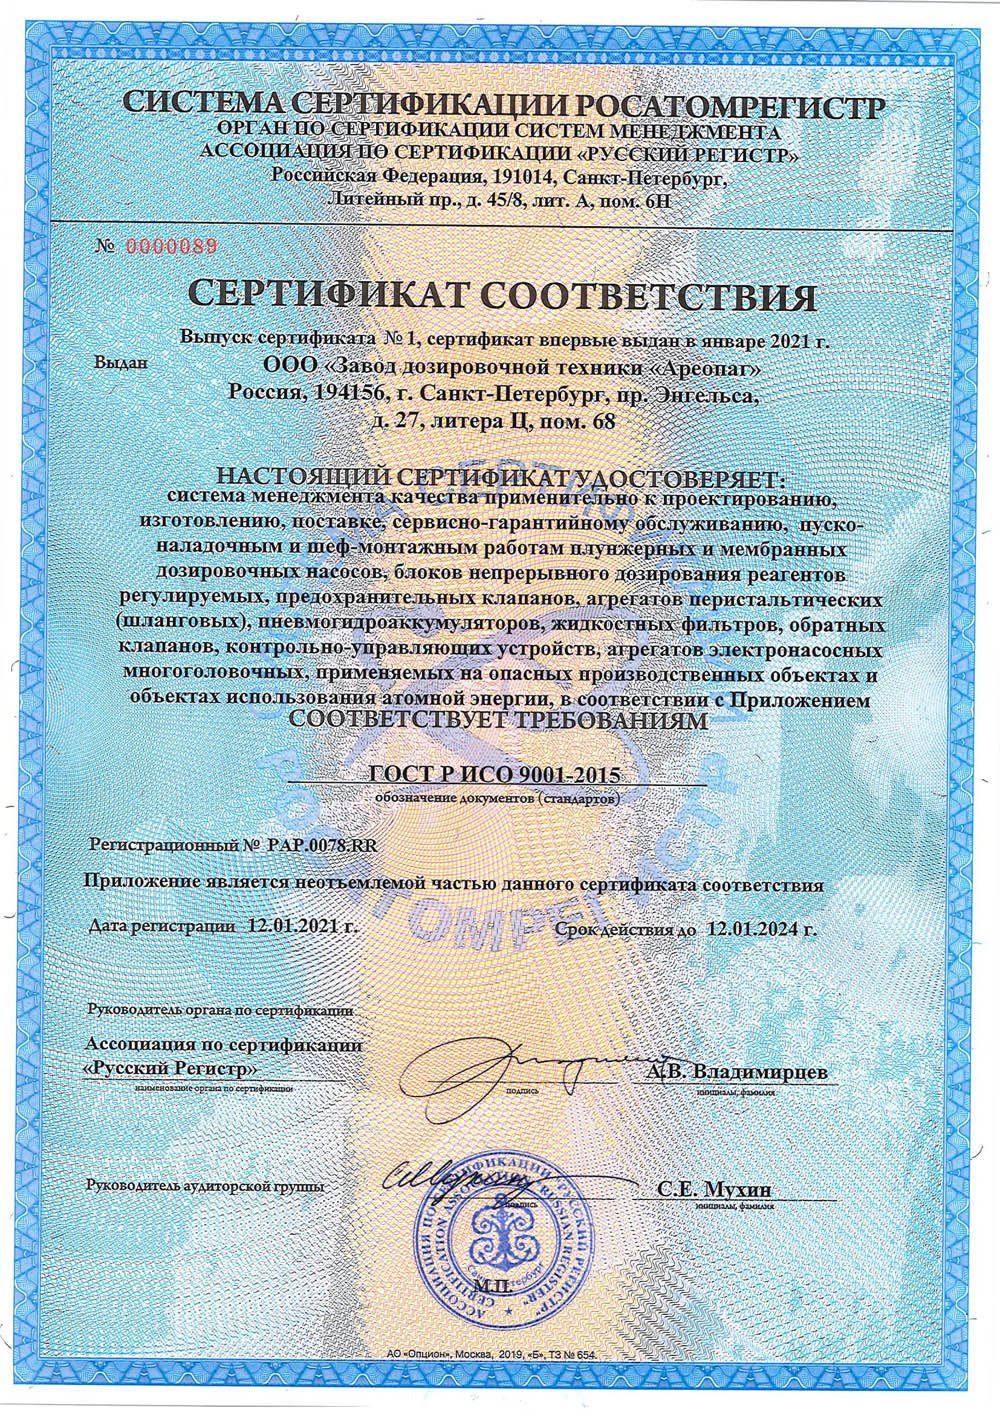 Сертификат соответствия Росатомрегистра